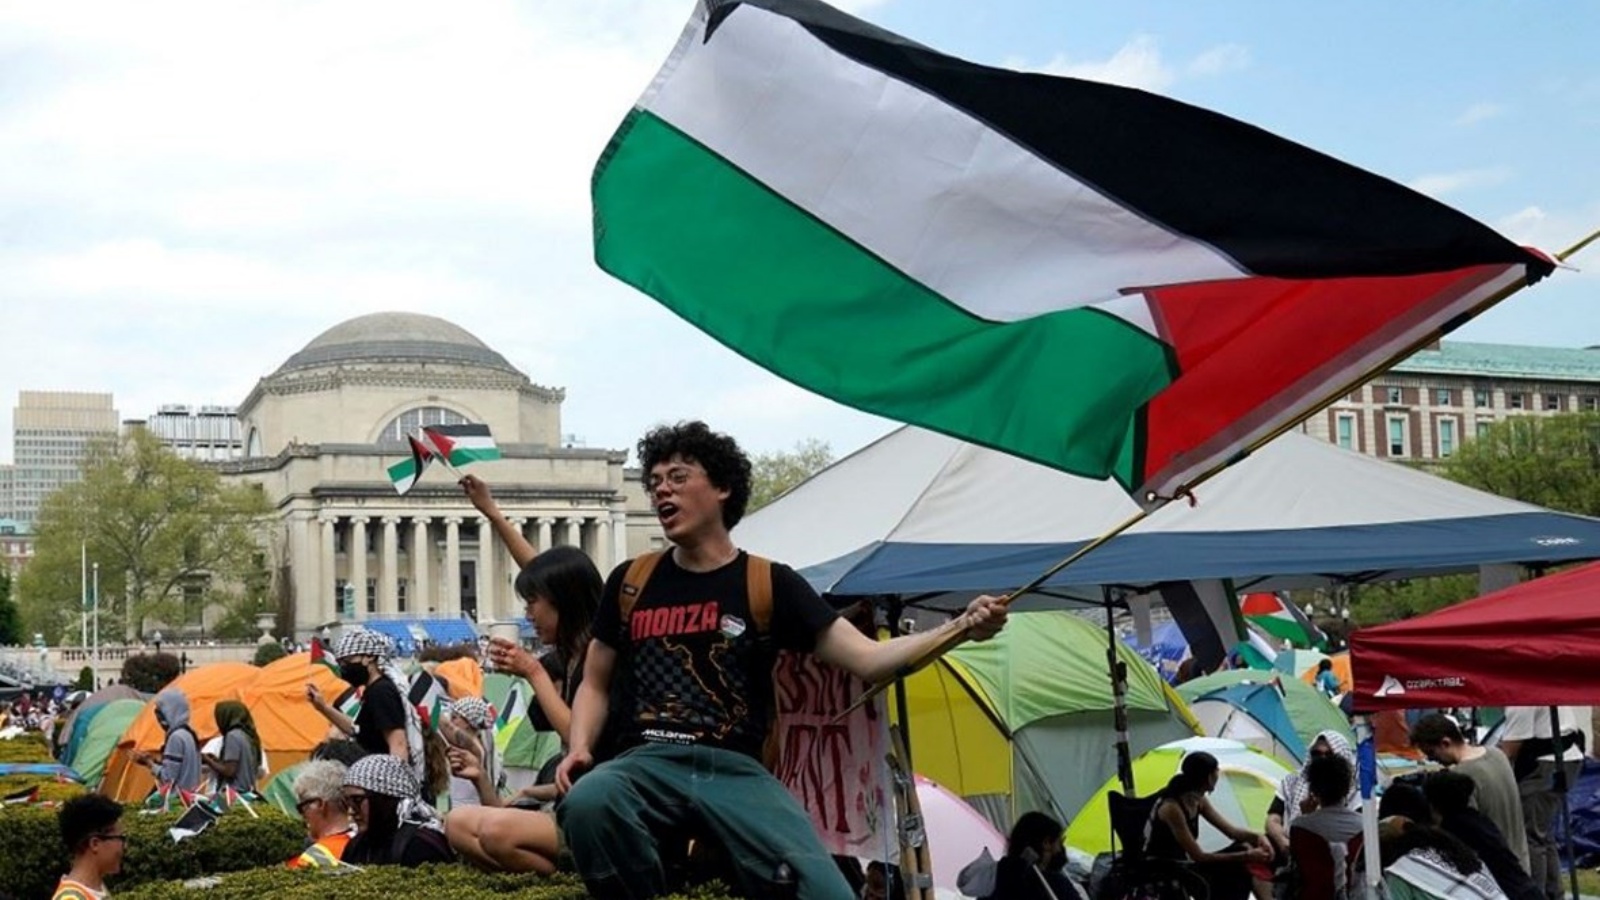 متظاهرون يلوحون بالأعلام الفلسطينية في الحديقة الغربية لجامعة كولومبيا 